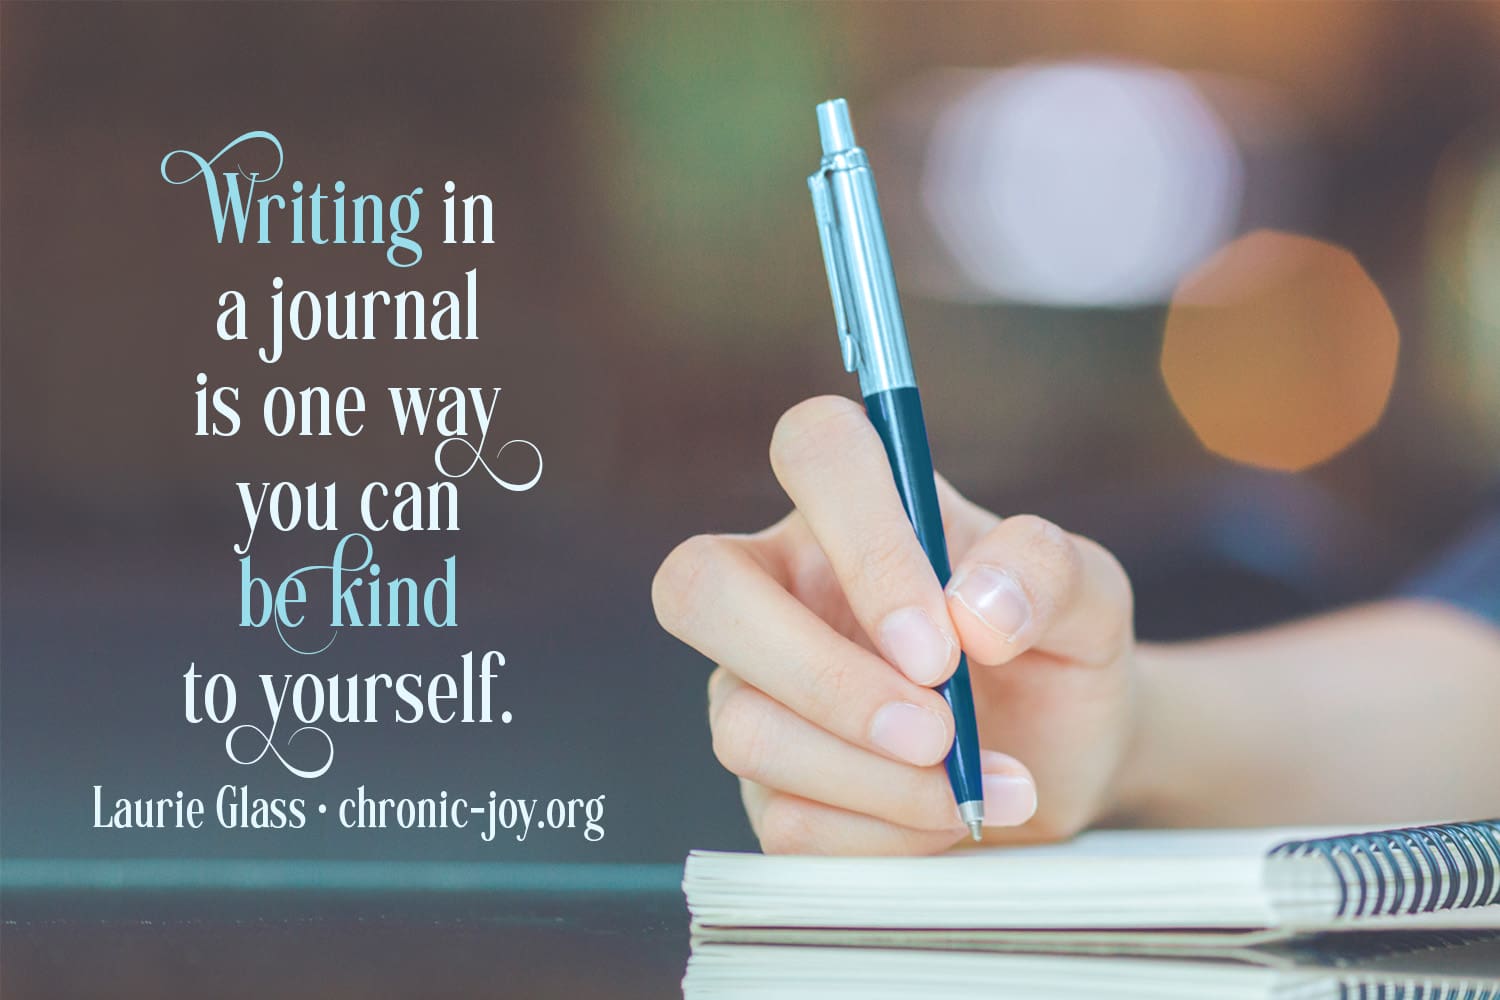 Journaling Benefits